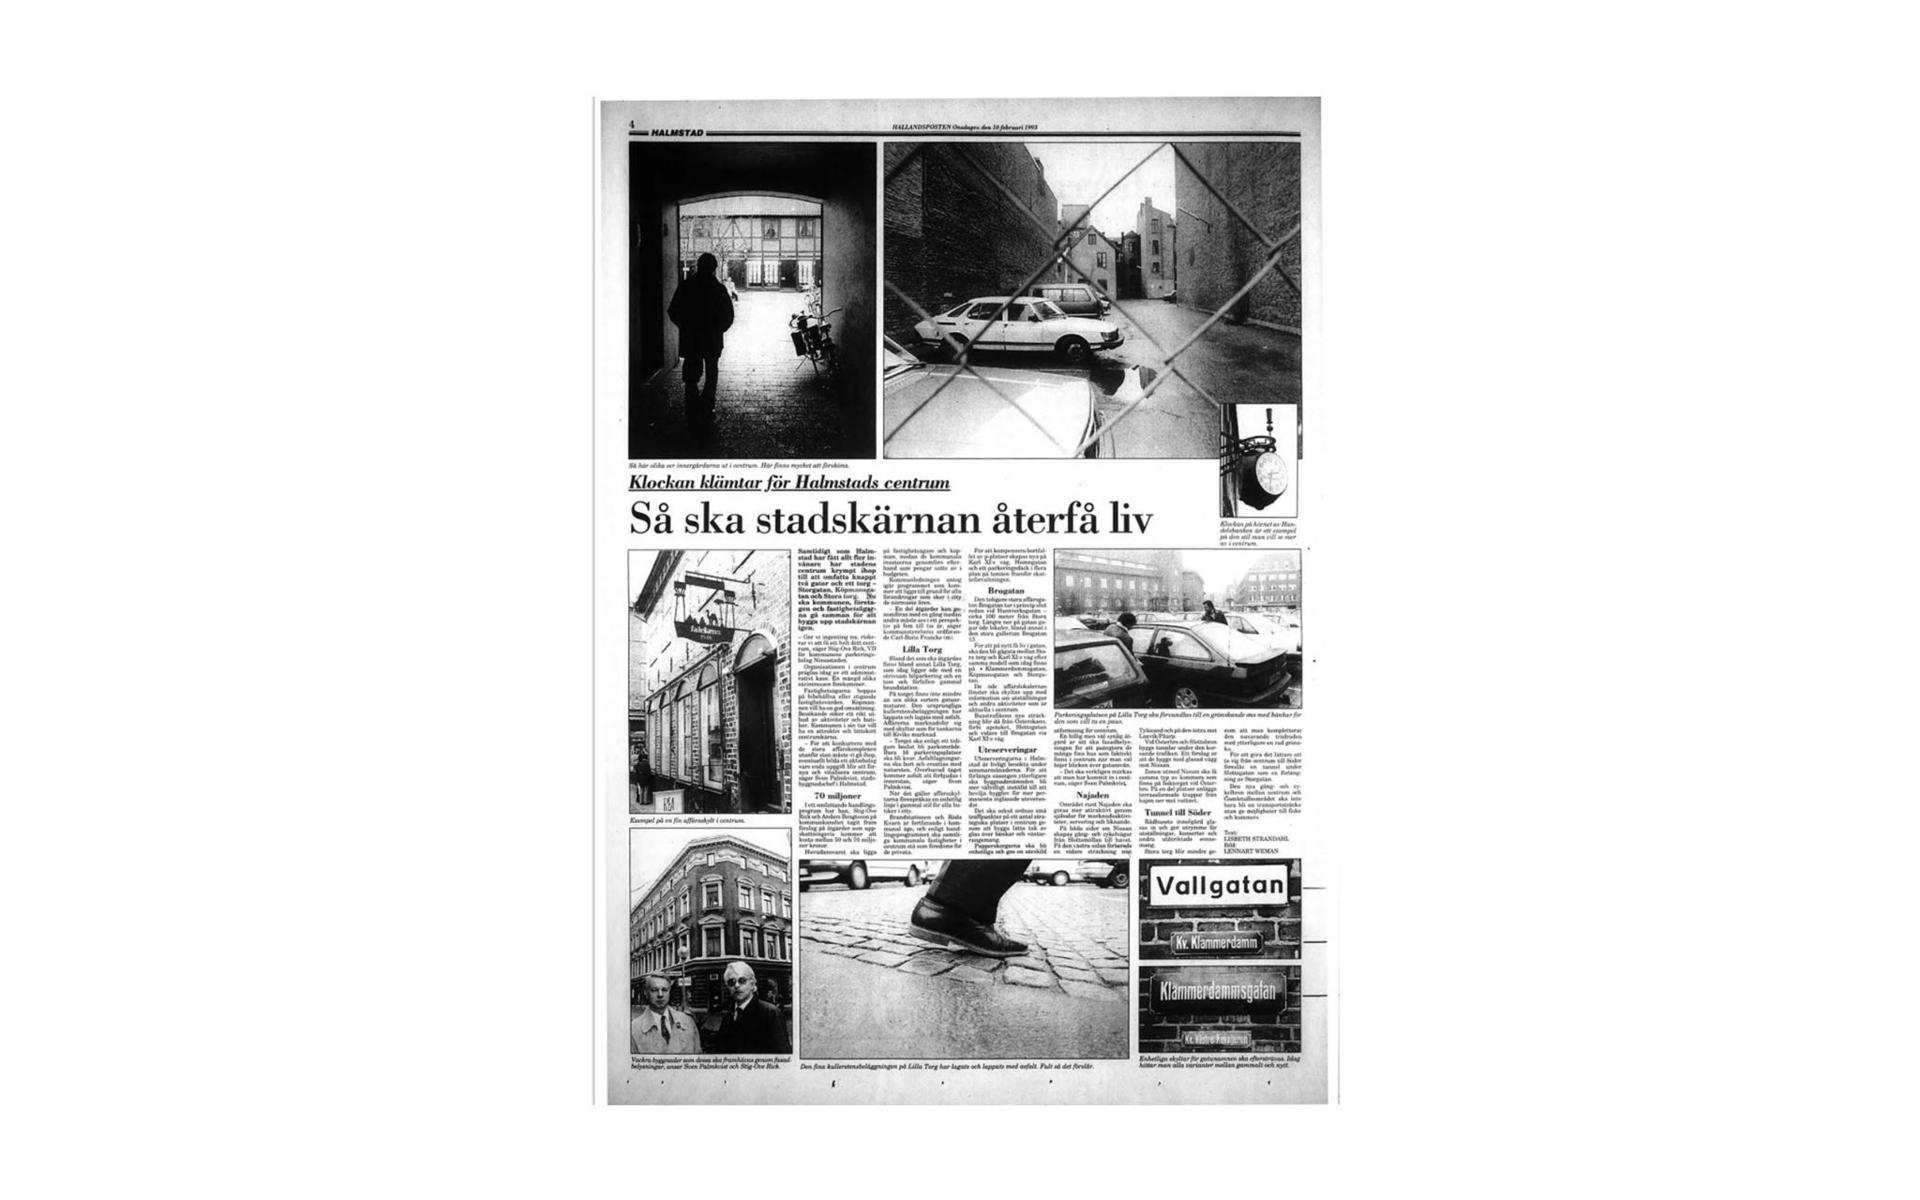 ”Klockan klämtar för Halmstads centrum - så ska stadskärnan återfå liv” löd rubriken i februari 1993. 